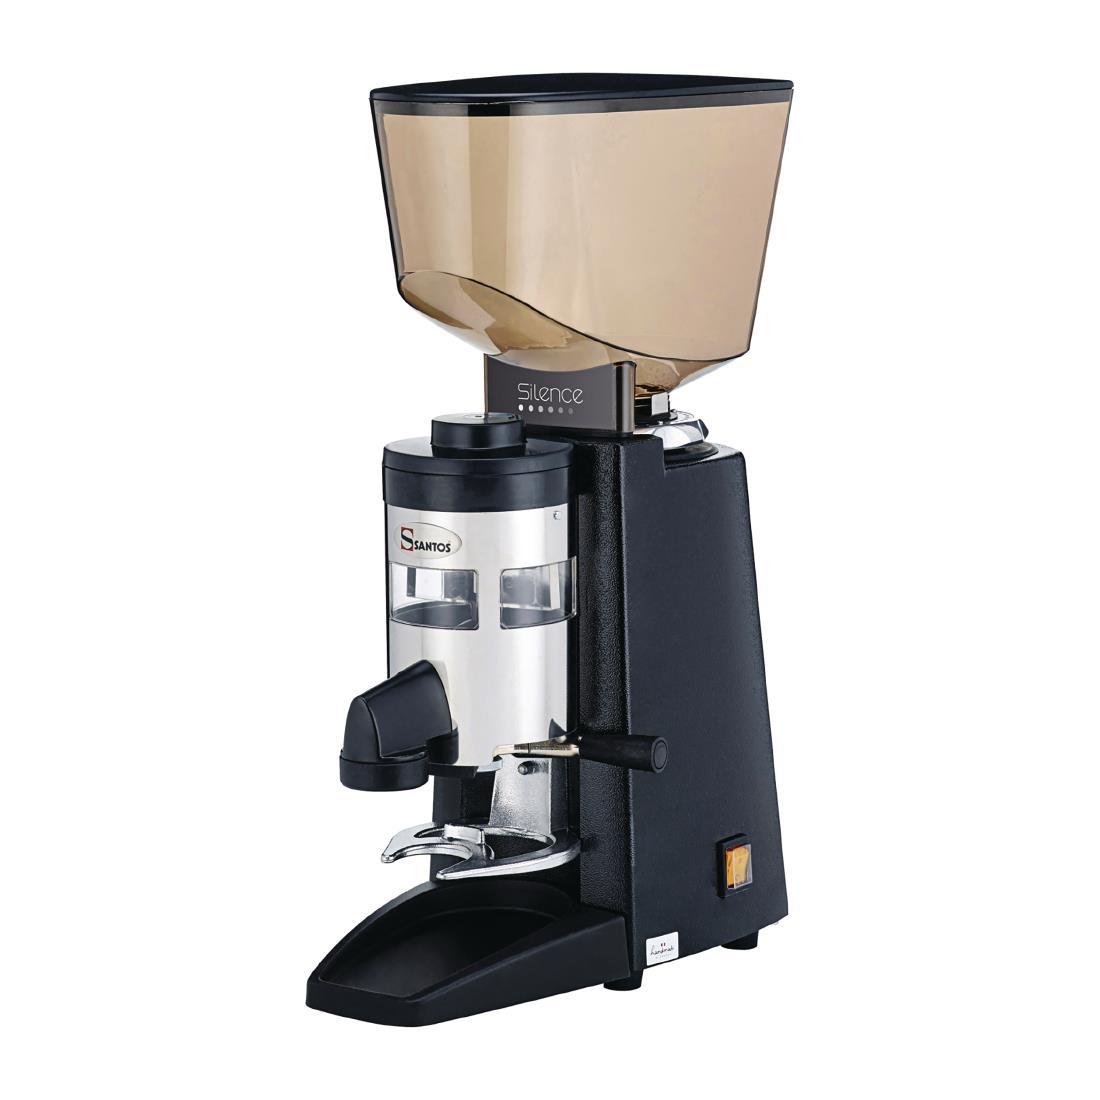 Santos Silent Espresso Coffee Grinder with Dispenser 40 - CK819  - 3